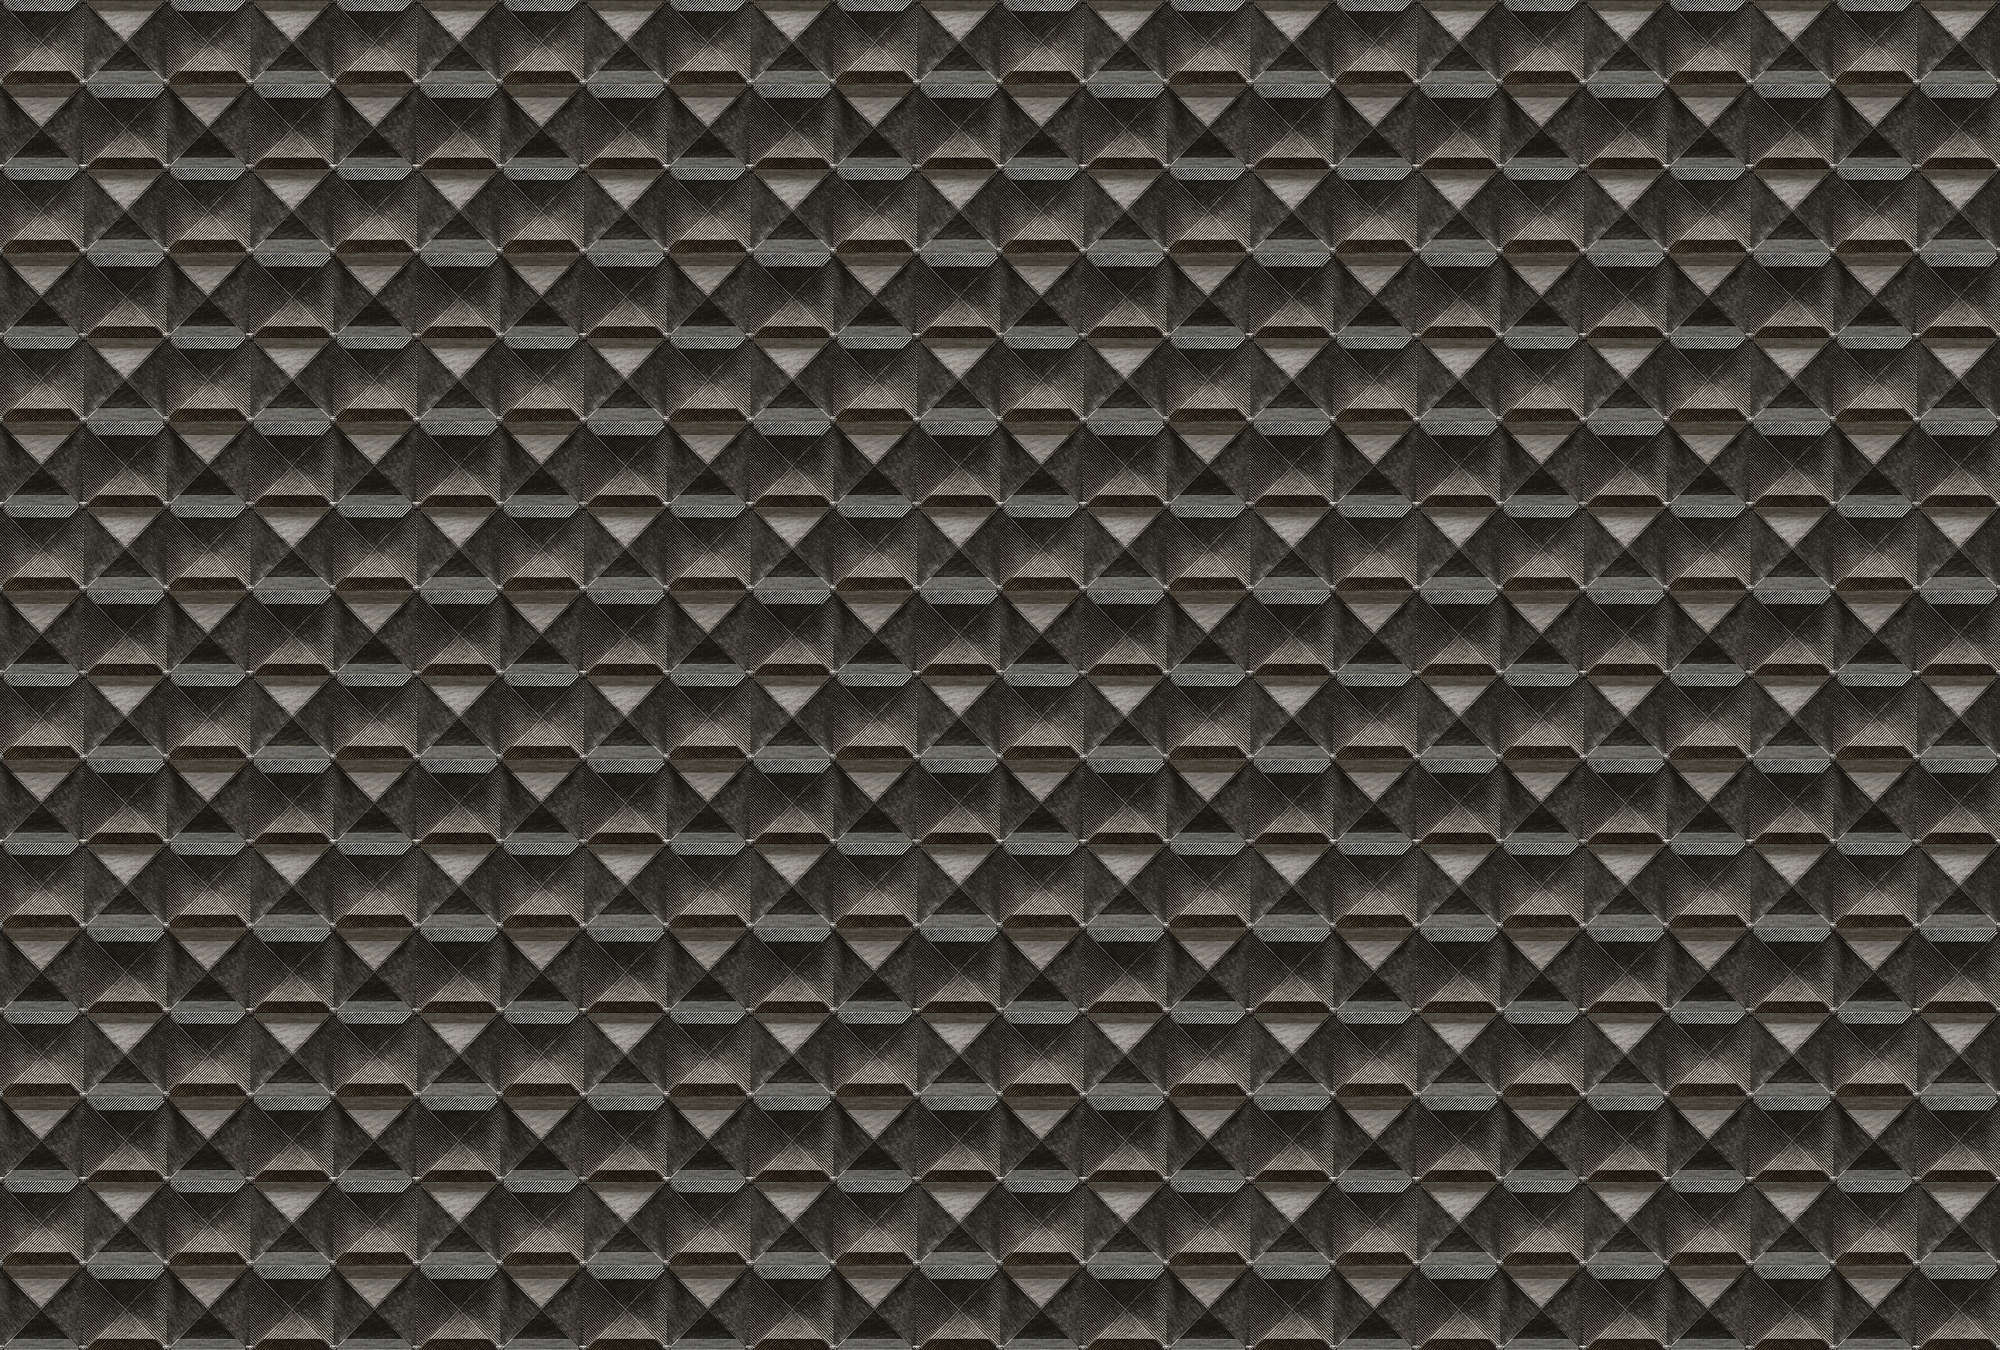             The edge 1 - Papel pintado 3D con diseño de rombos metálicos - marrón, negro | vellón liso nacarado
        